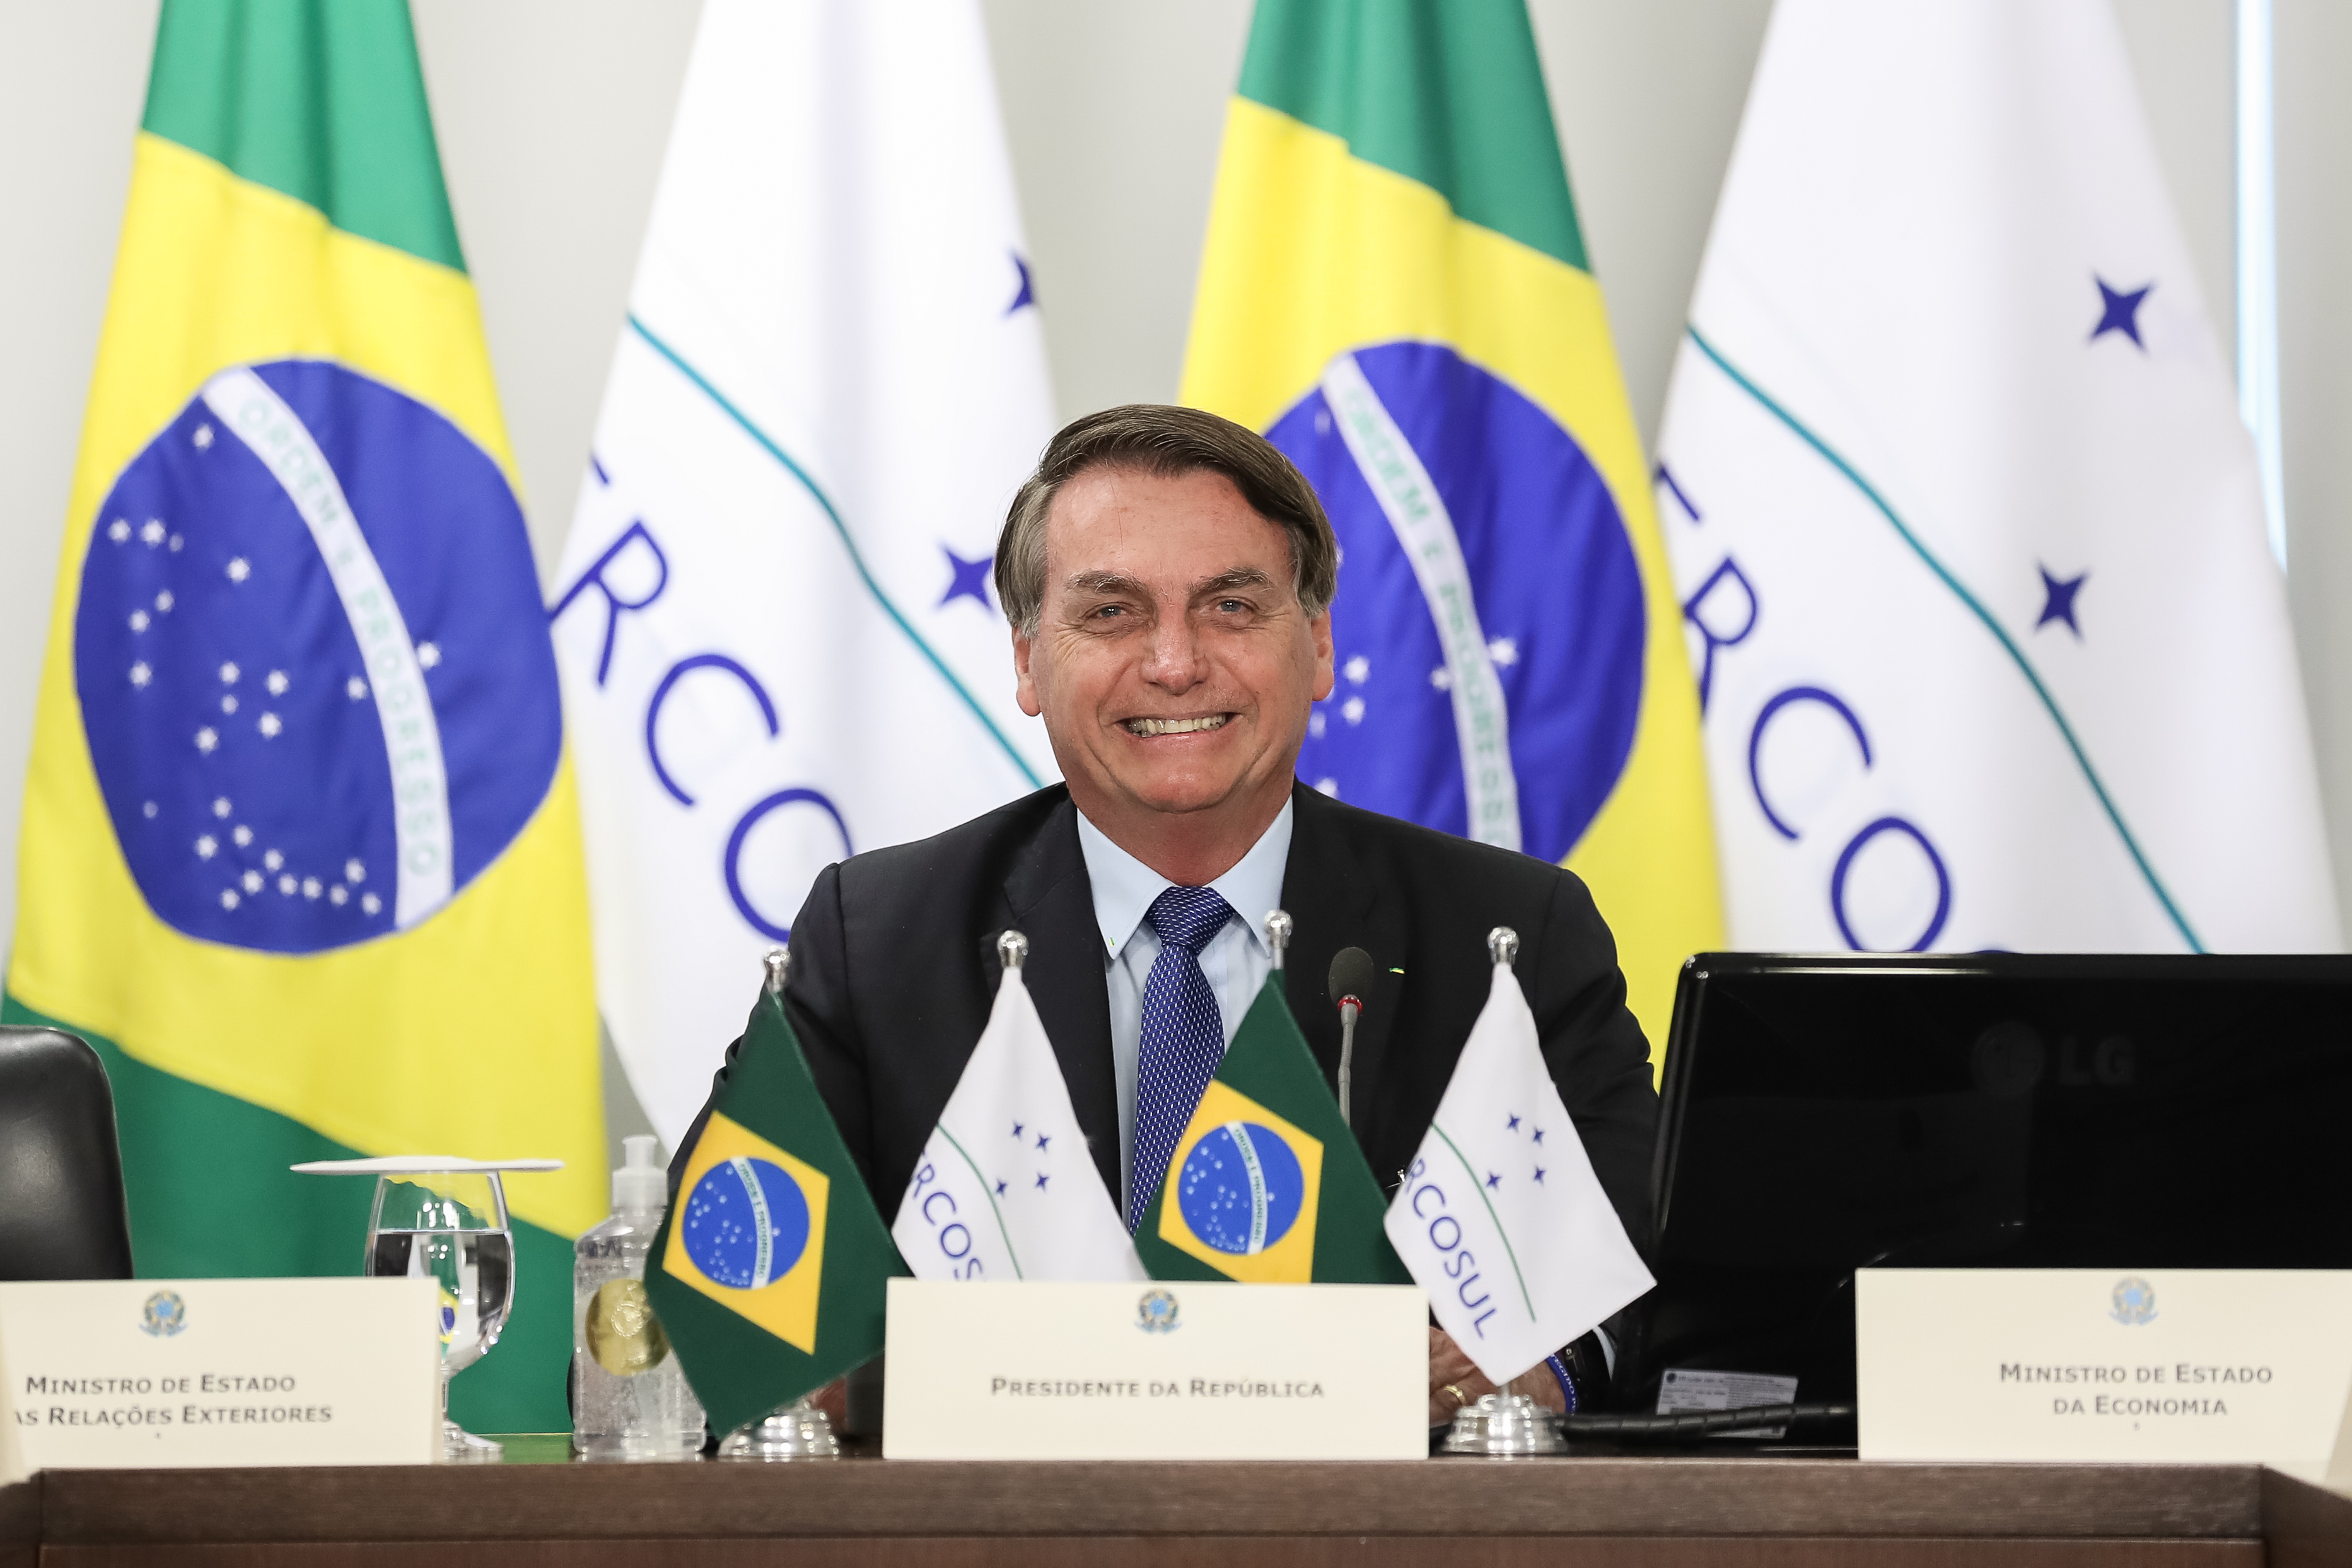 Február 17-én érkezik Budapestre Jair Bolsonaro, Brazília sajátos nézeteiről ismert elnöke